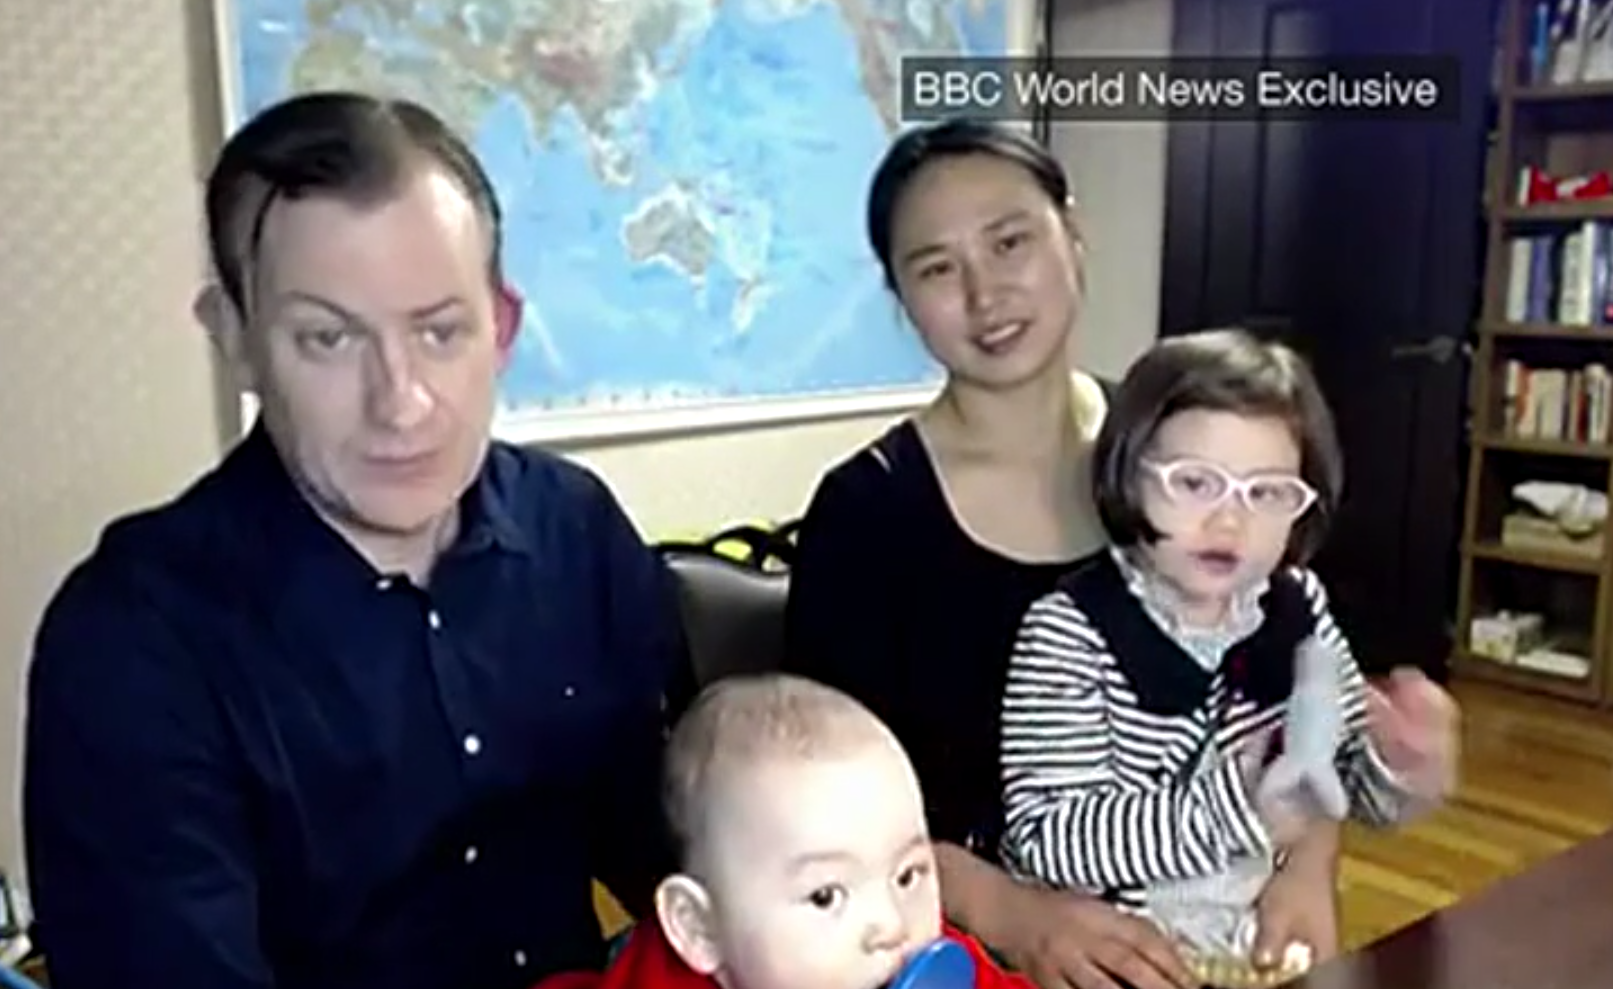 El profesor y la familia que se han hecho virales vuelven a la BBC